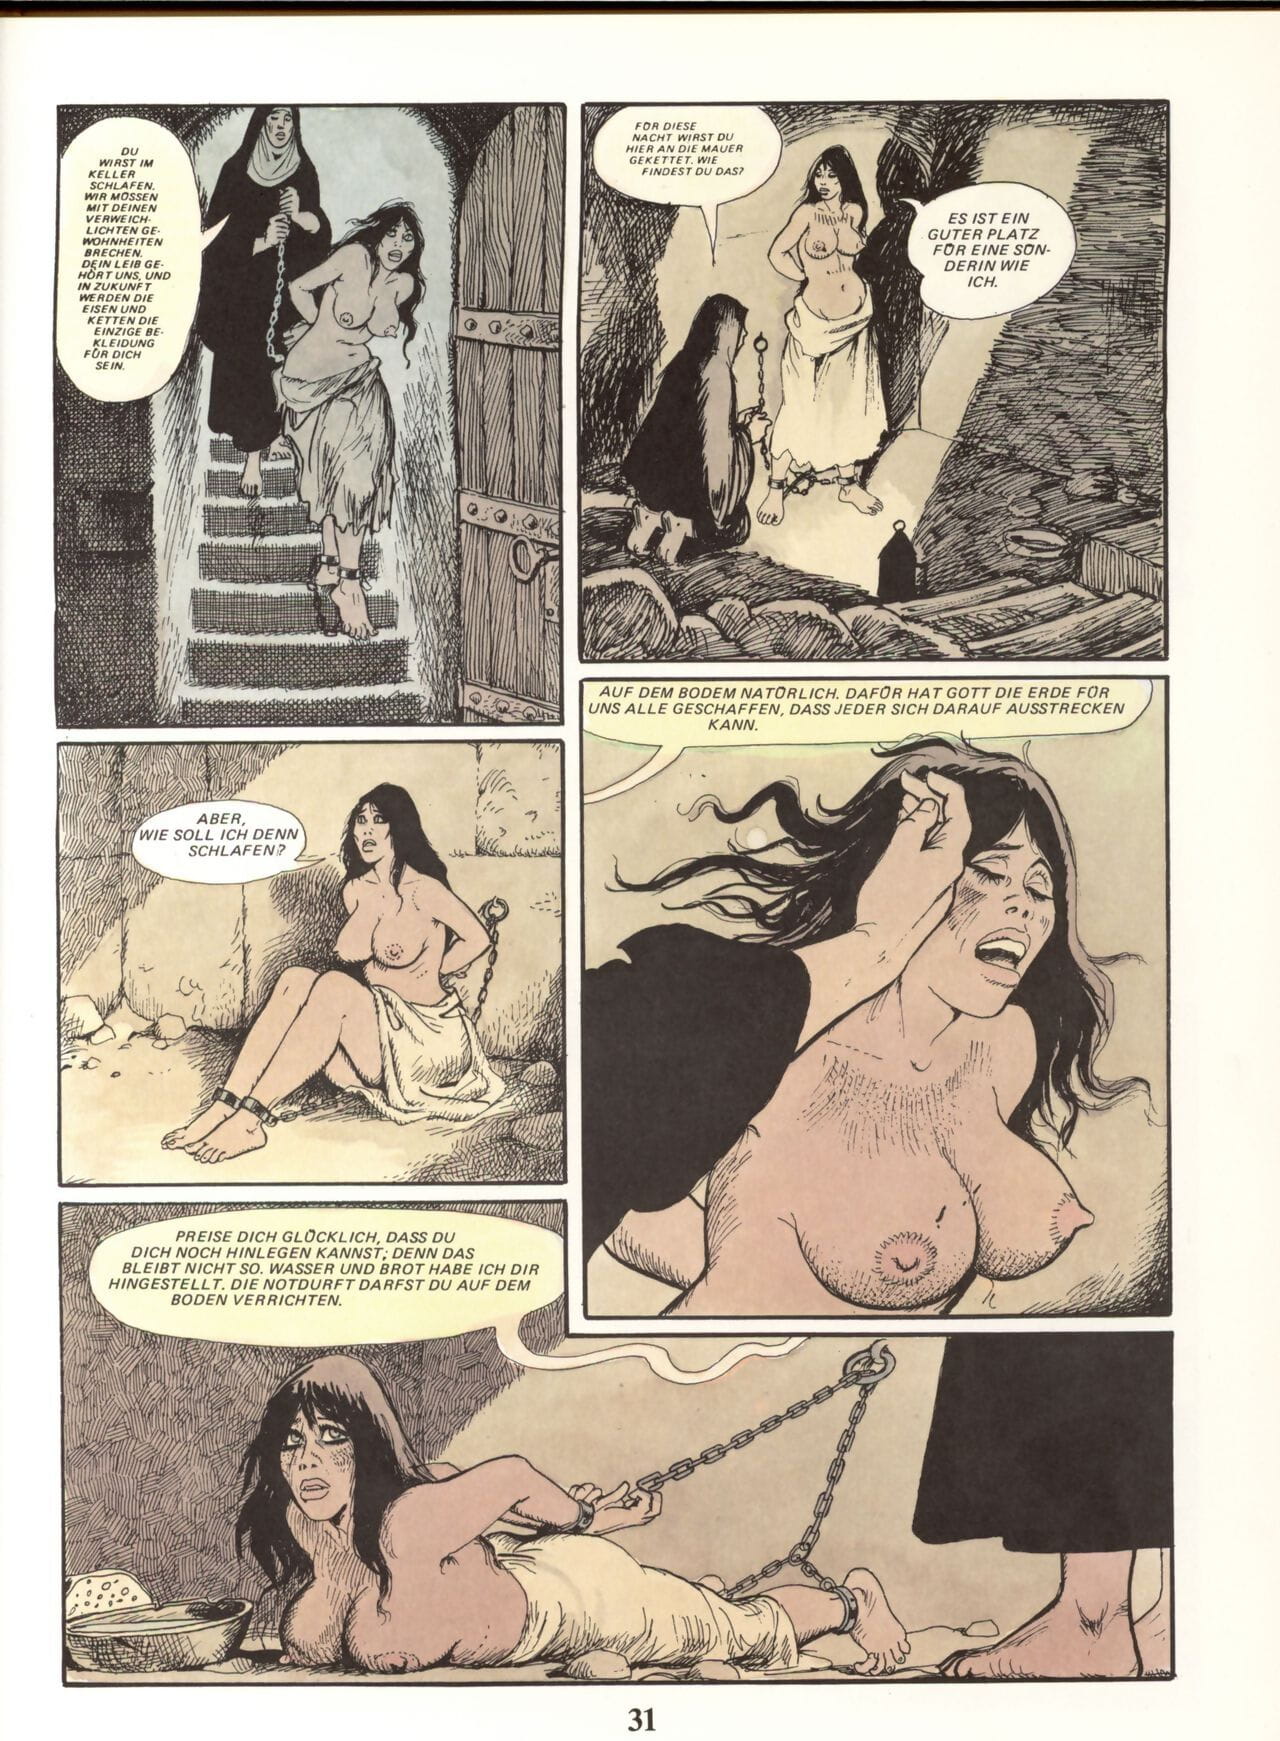 Marie Gabrielle de Saint eutropo #02 parte 2 page 1